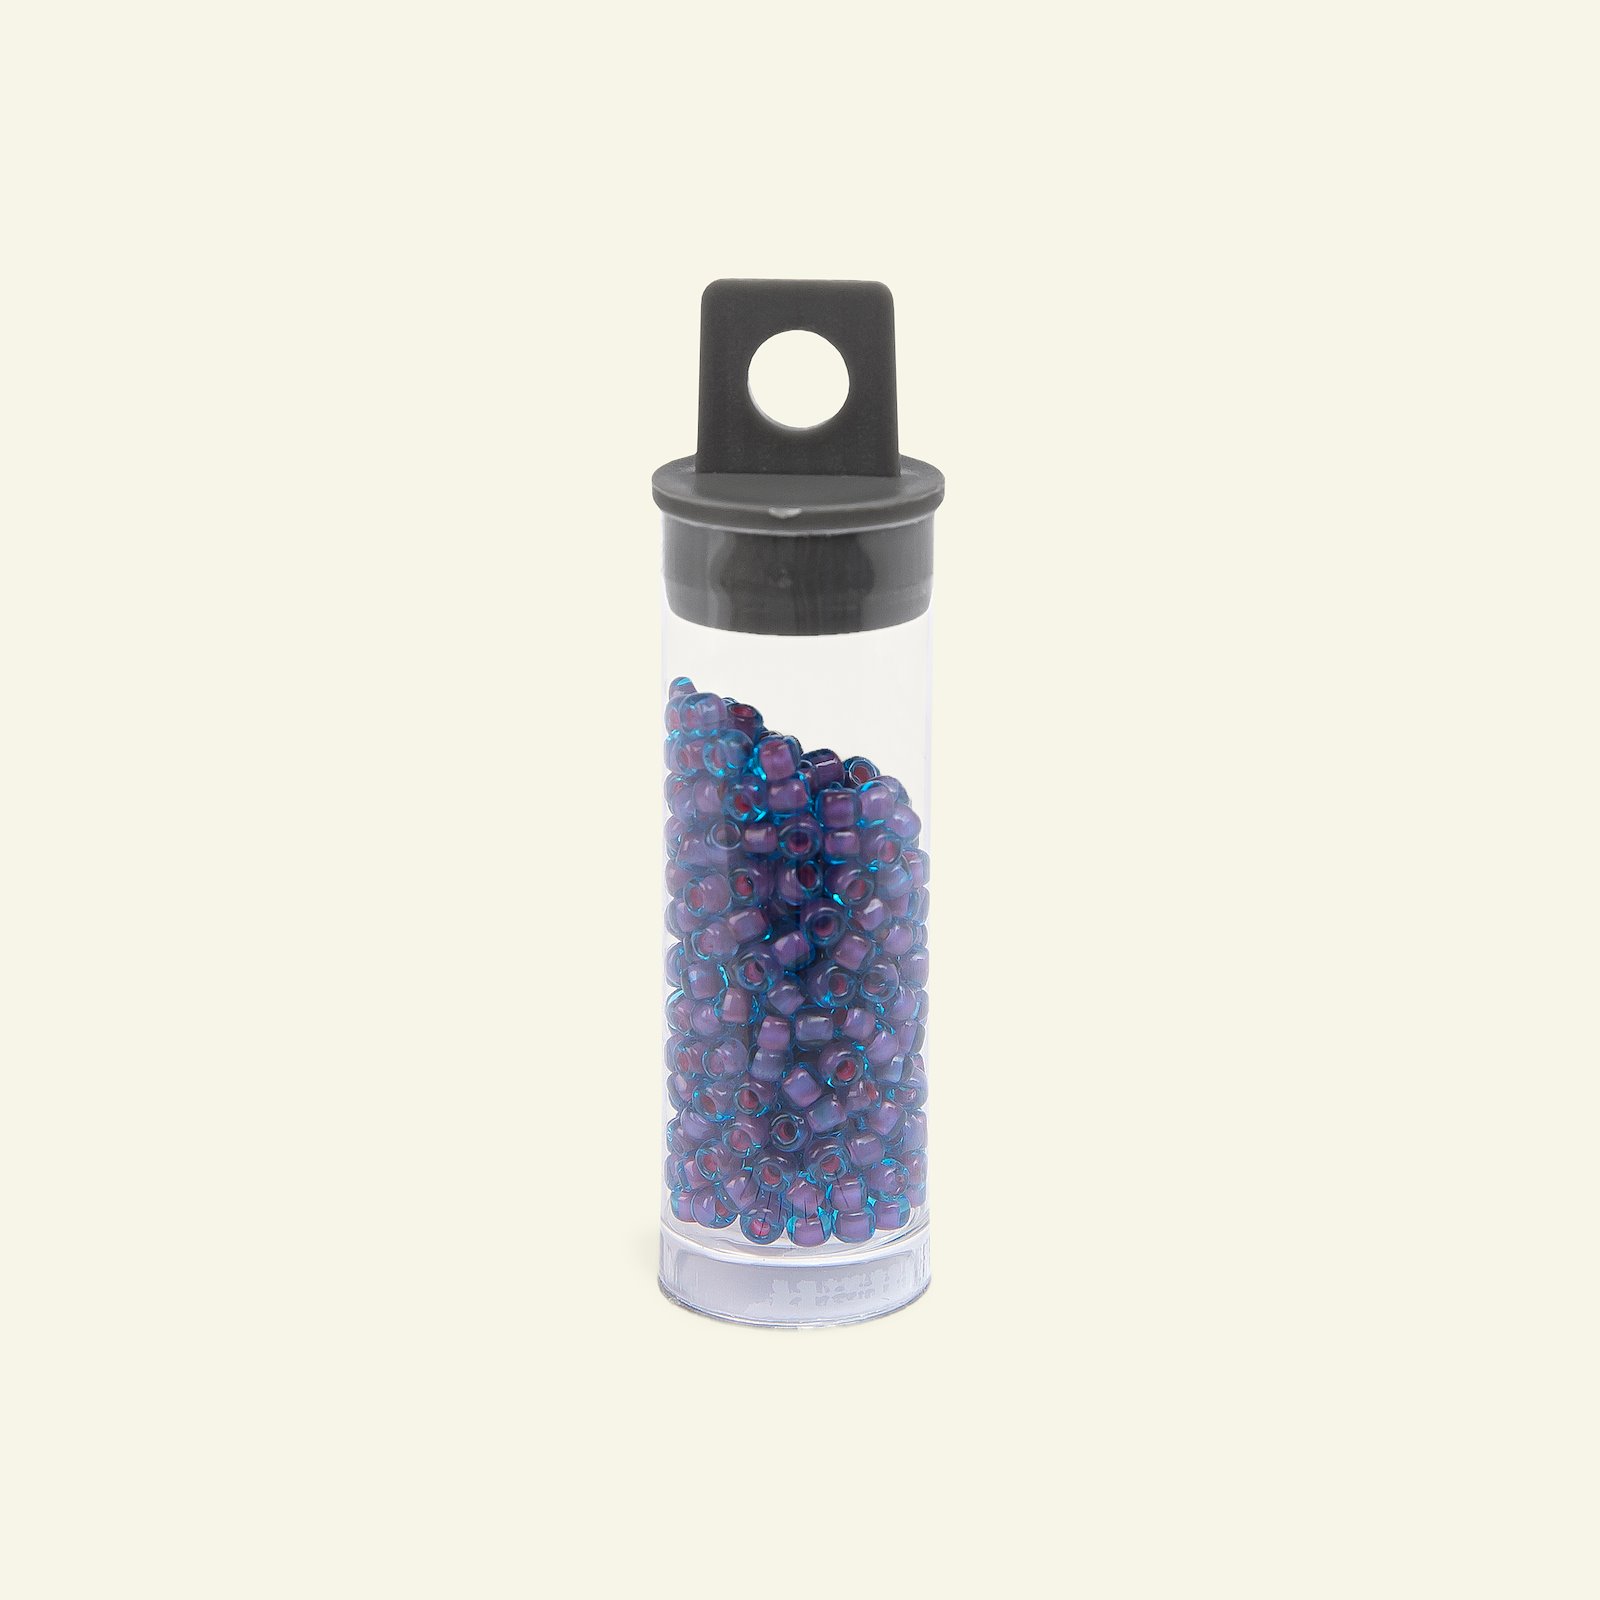 Matsuno glass bead 8/0 purple/turquoise1 47126_pack